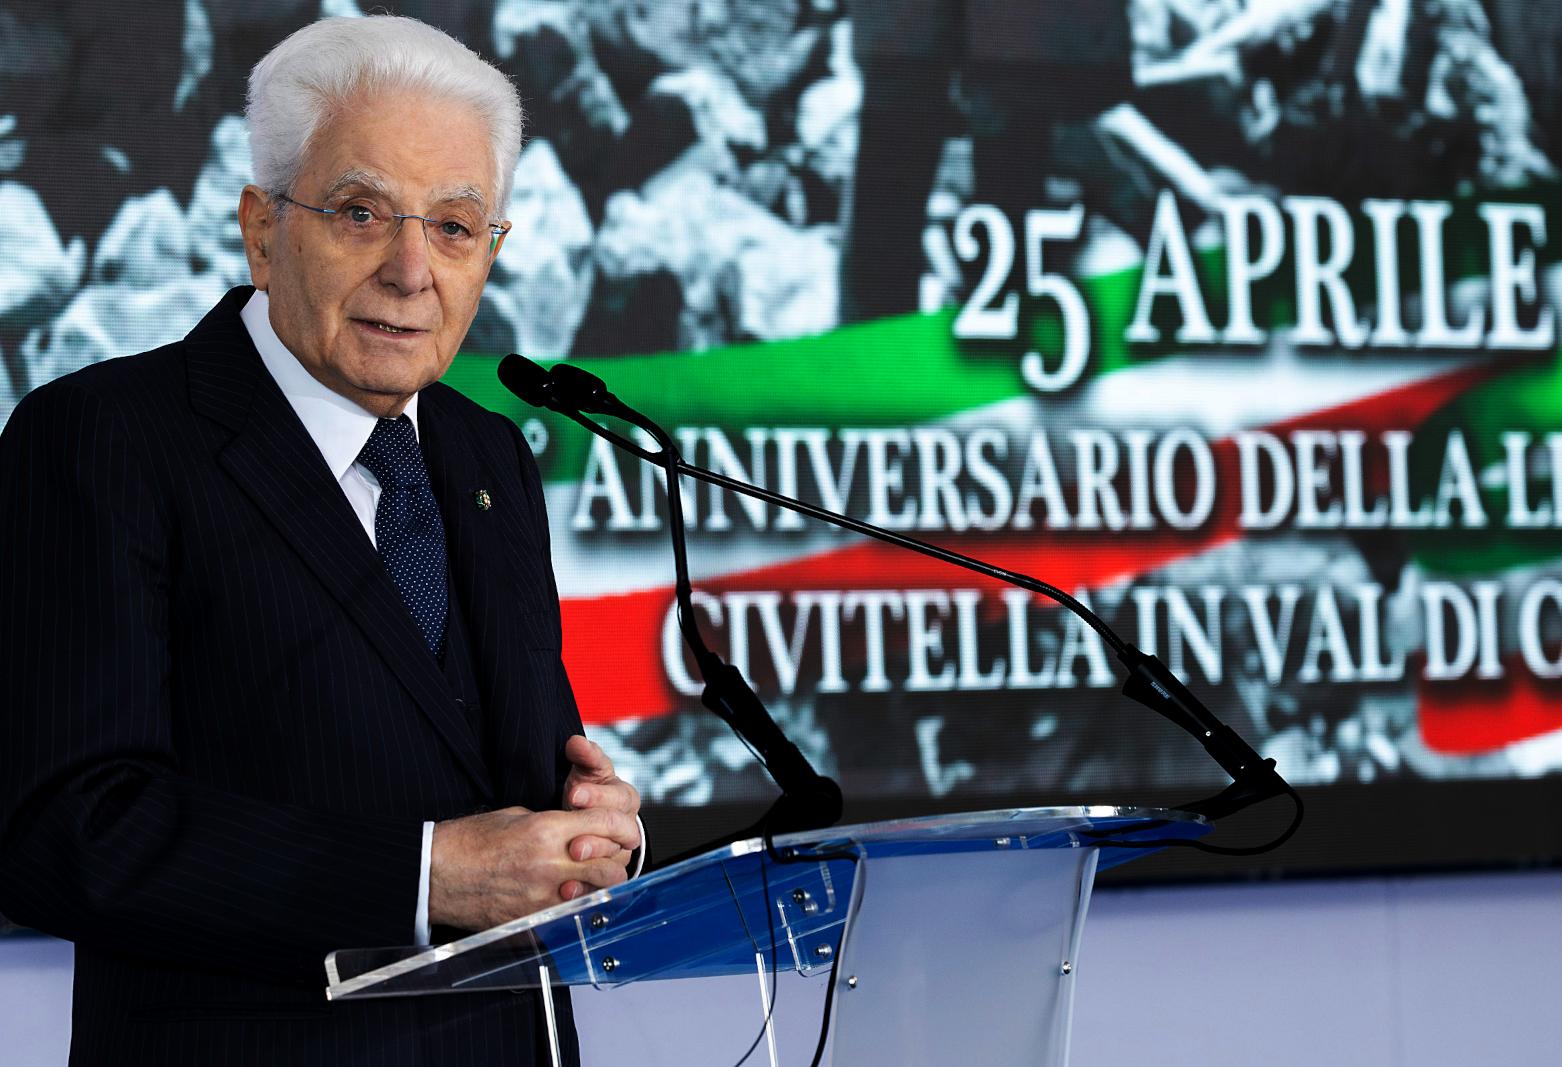 L'intervento del Presidente della Repubblica Sergio Mattarella per il  25 Aprile in Val di Chiana